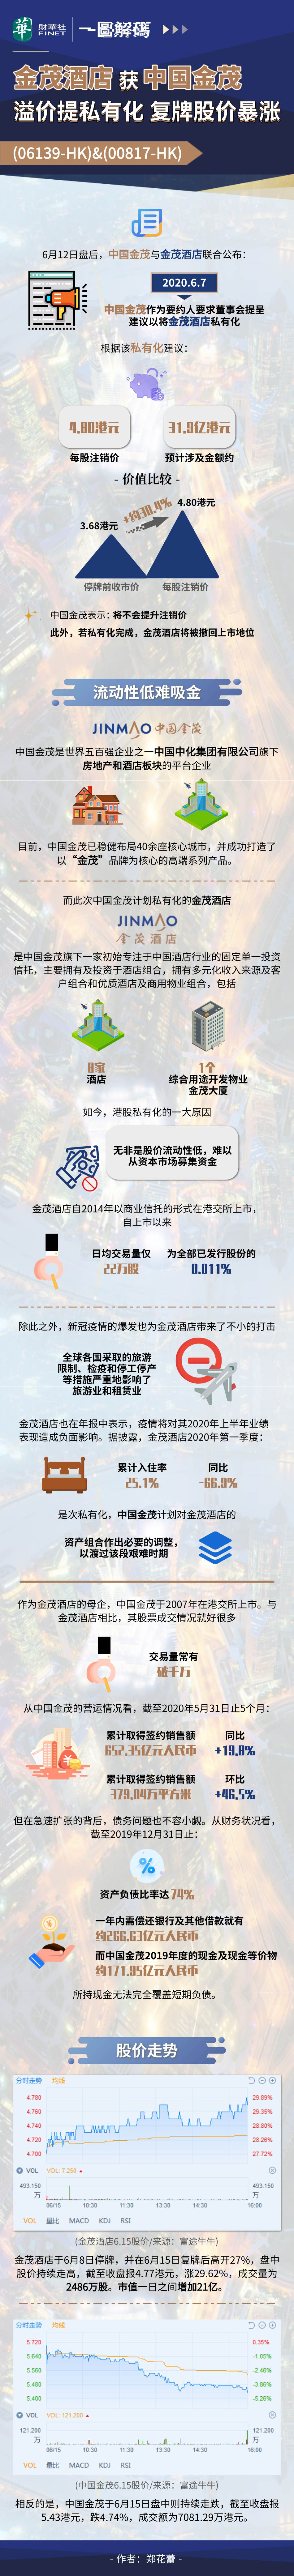 一图解码：金茂酒店获中国金茂溢价提私有化 复牌股价暴涨